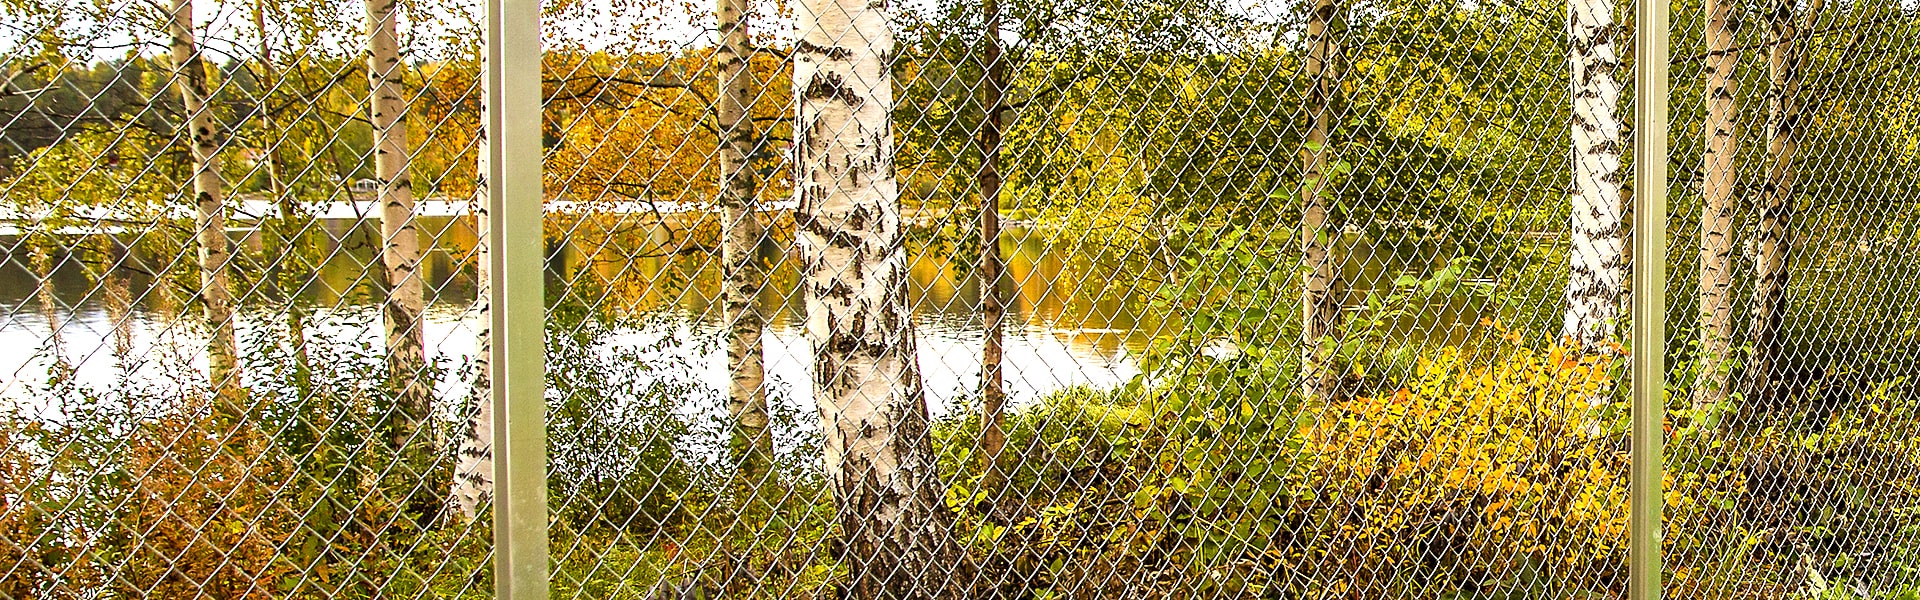 Chain-link fences